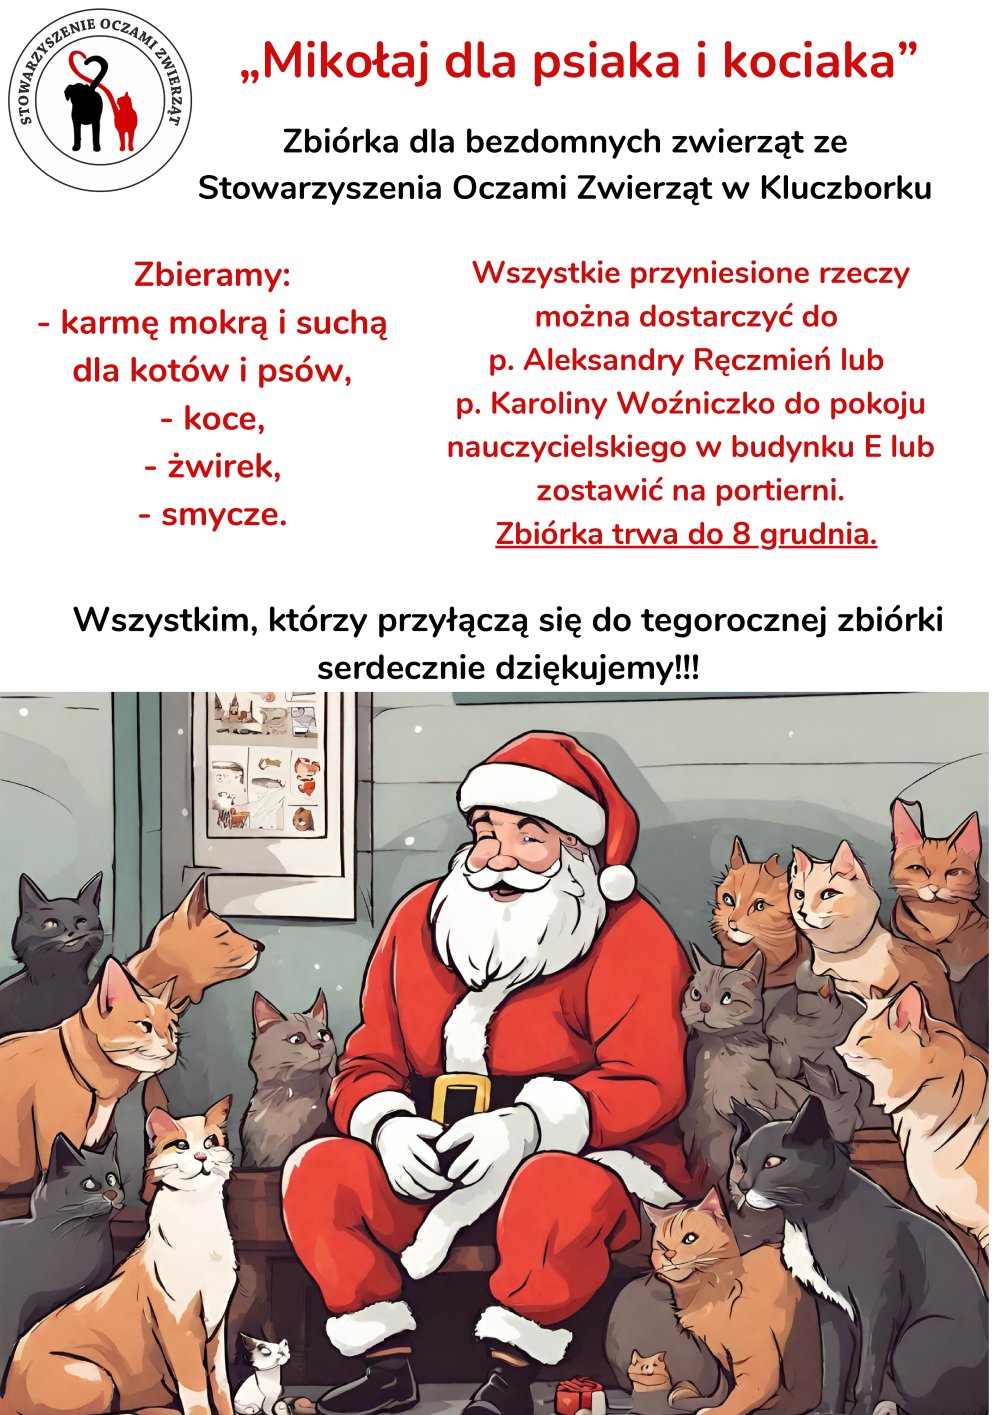 Mikołaj dla psiaka i kociaka - plakat dotyczący zbiórki dla bezdomnych zwierząt